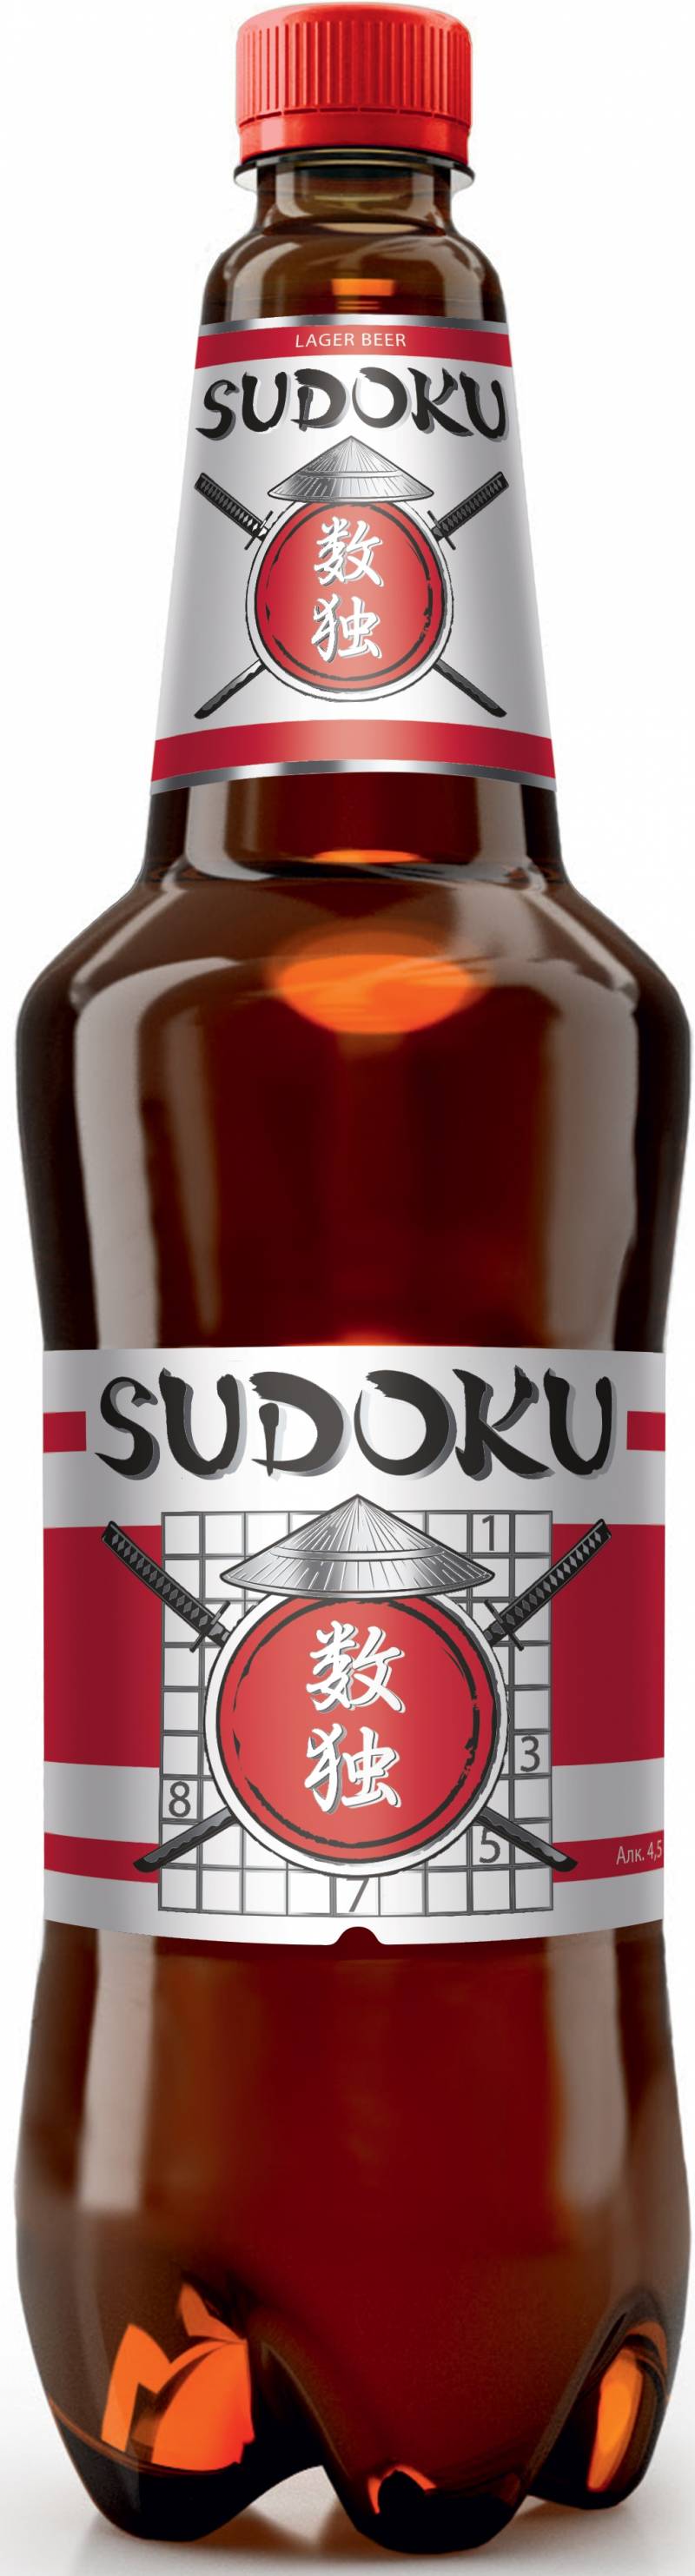 Пиво Судоку 1,35 л. (Россия)